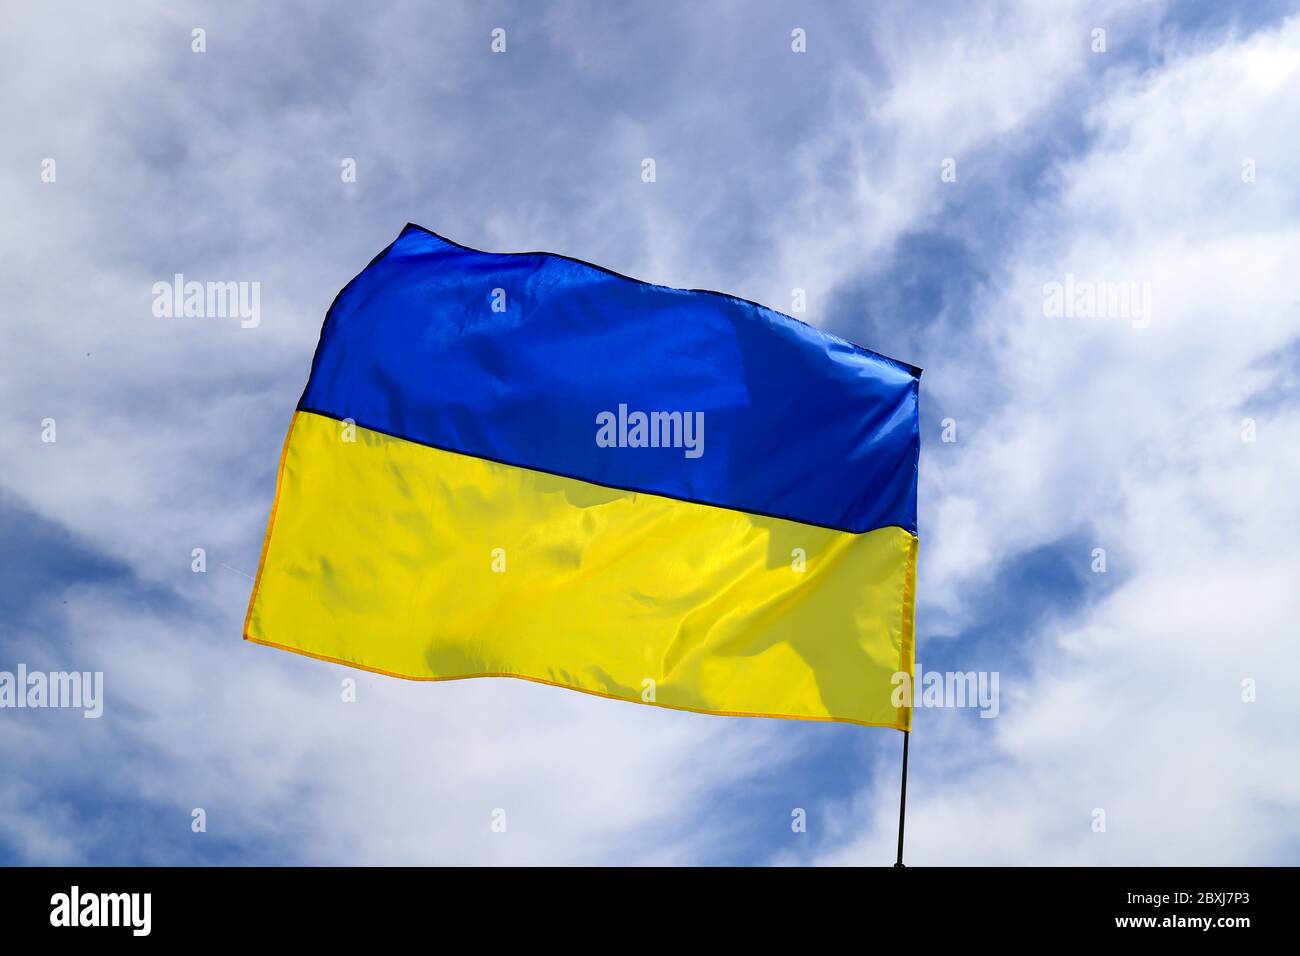 Le grand drapeau national de l'Ukraine vole dans le ciel bleu. Grand drapeau ukrainien jaune bleu dans la ville de Dnepr, pendant les fêtes nationales d'indépendance Banque D'Images